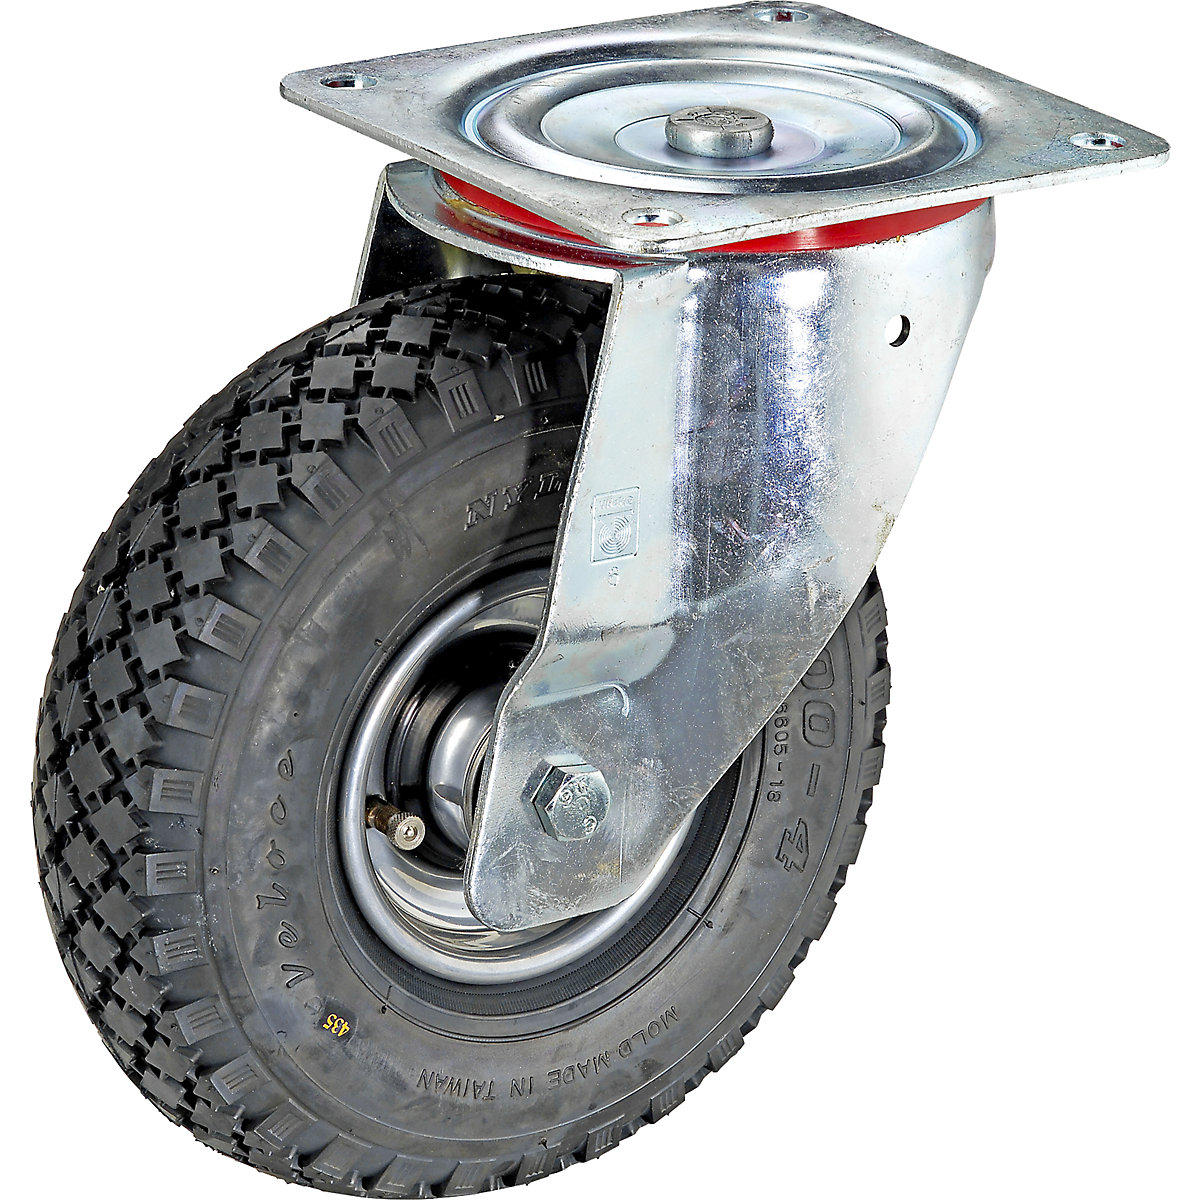 Pneumatski kotač na naplatku od čeličnog lima, Ø x širina kotača 260 x 85 mm, gumeni profil s blokom, okretni kotač, s valjkastim ležajem-4